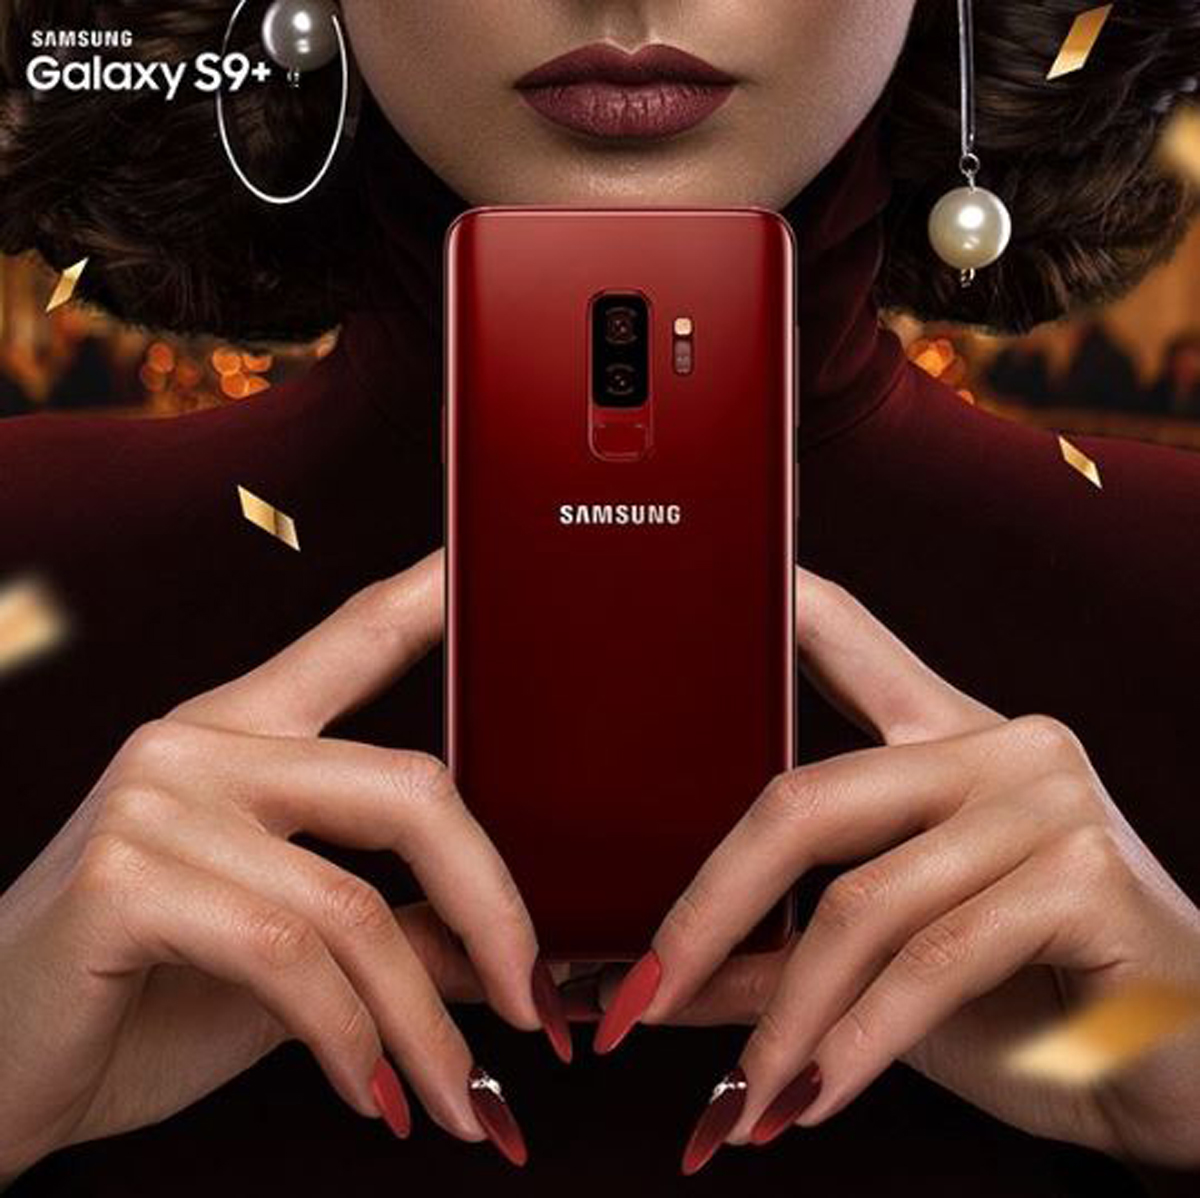 Diện mạo bóng bẩy, quyến rũ của sắc Vang Đỏ cùng thiết kế tinh xảo của Galaxy S9+ sẽ làm hoàn chỉnh phong cách thời trang của người dùng